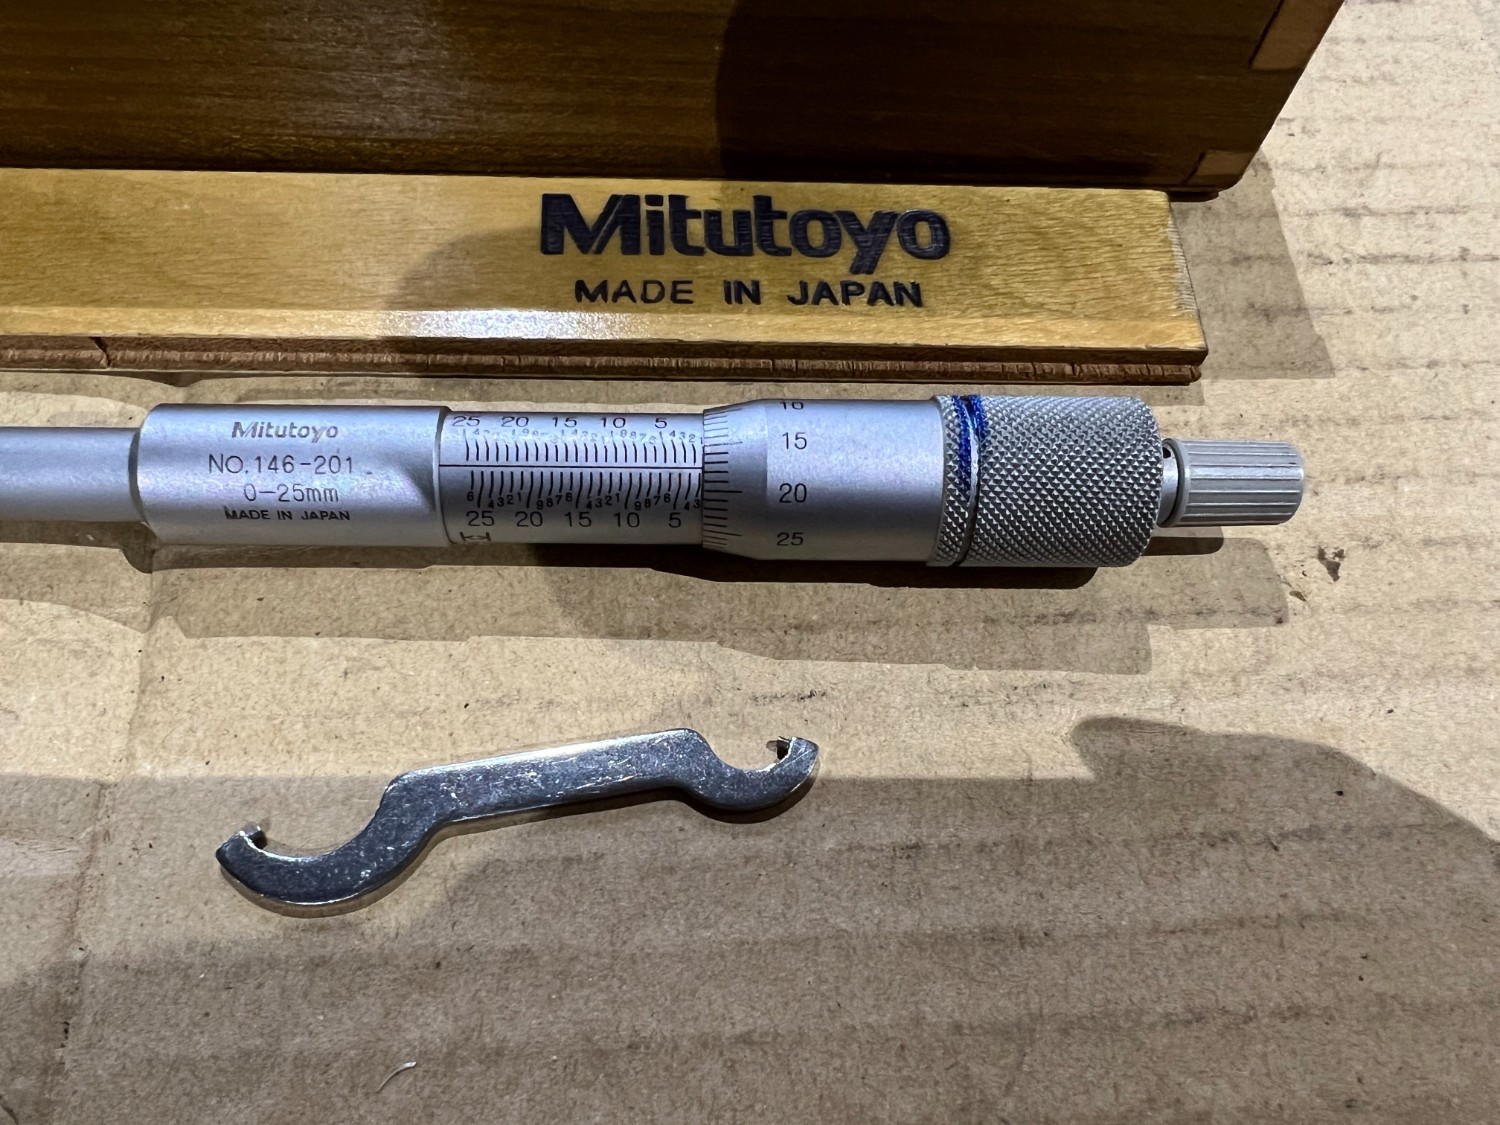 中古Inside micrometer 【グルーブマイクロメータ】0-25mm ミツトヨ/Mitutoyo